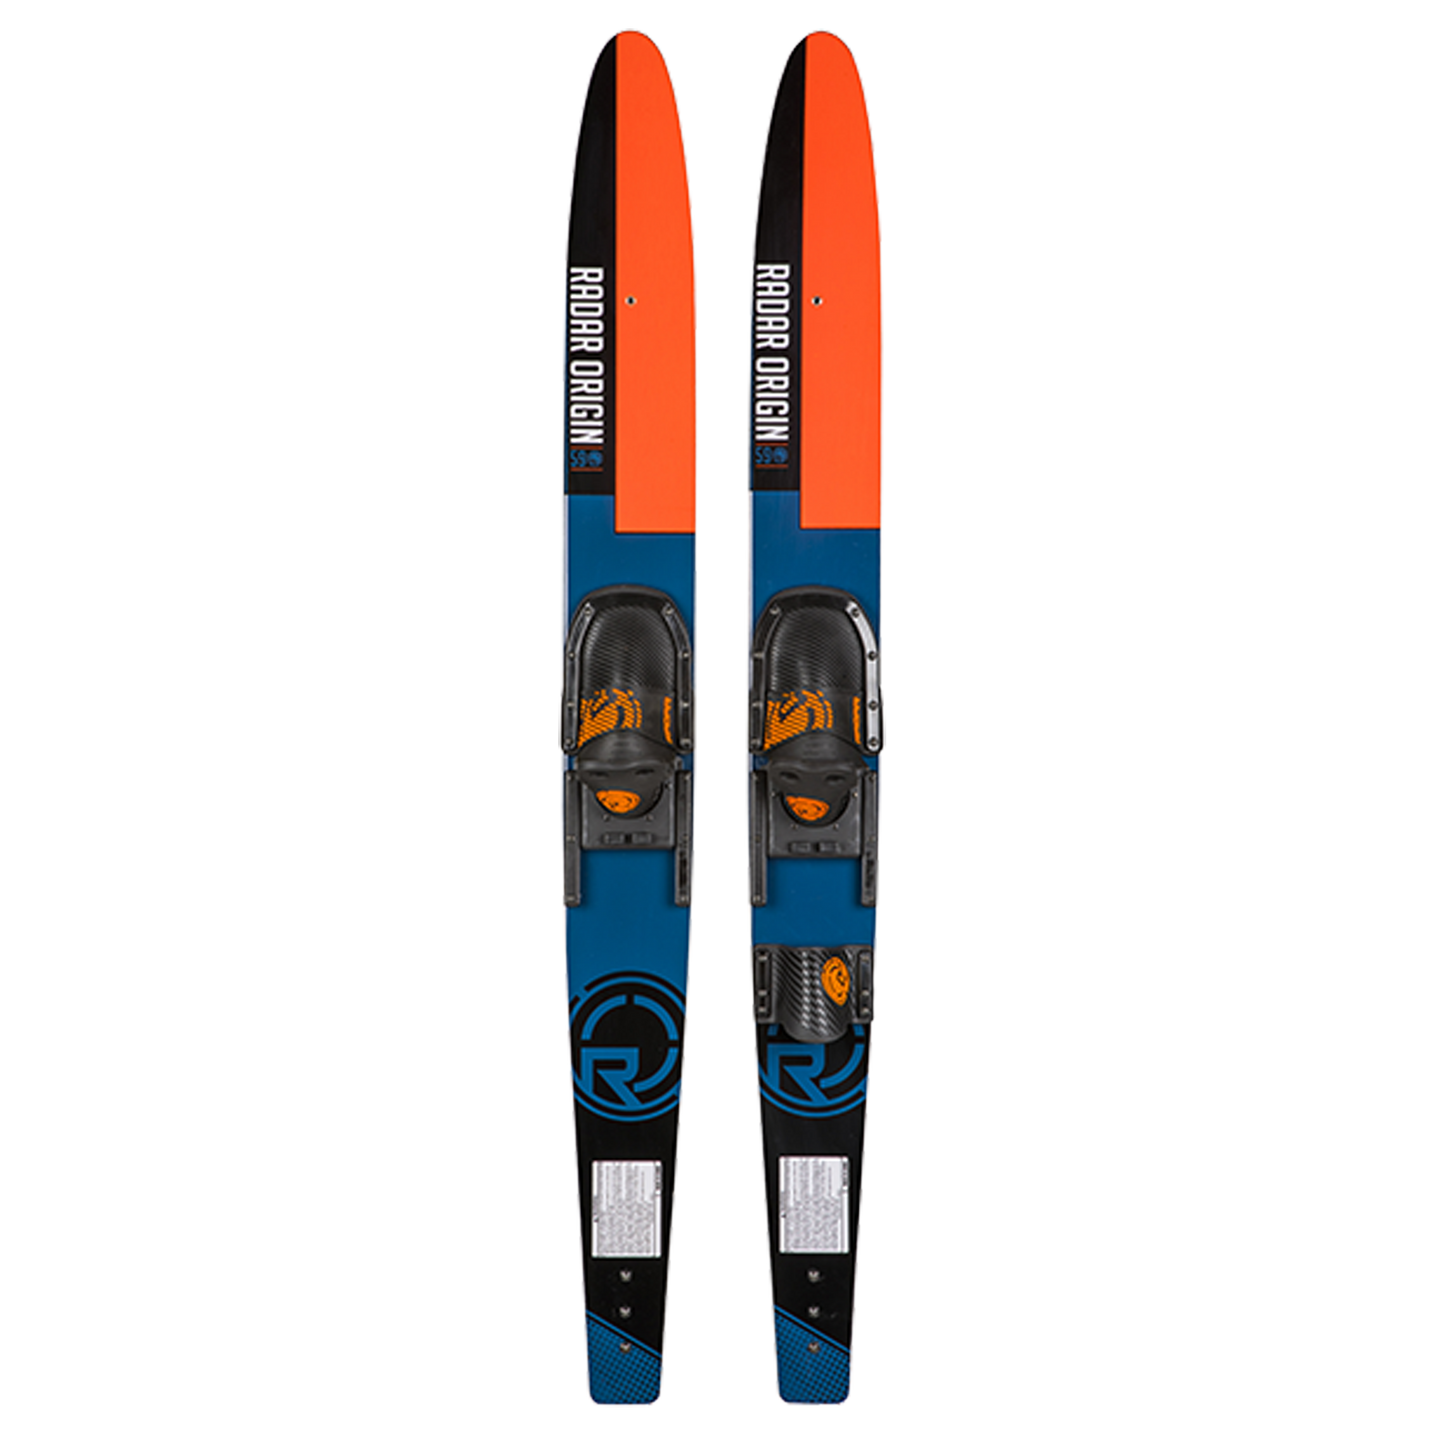 Radar Origin Water skis